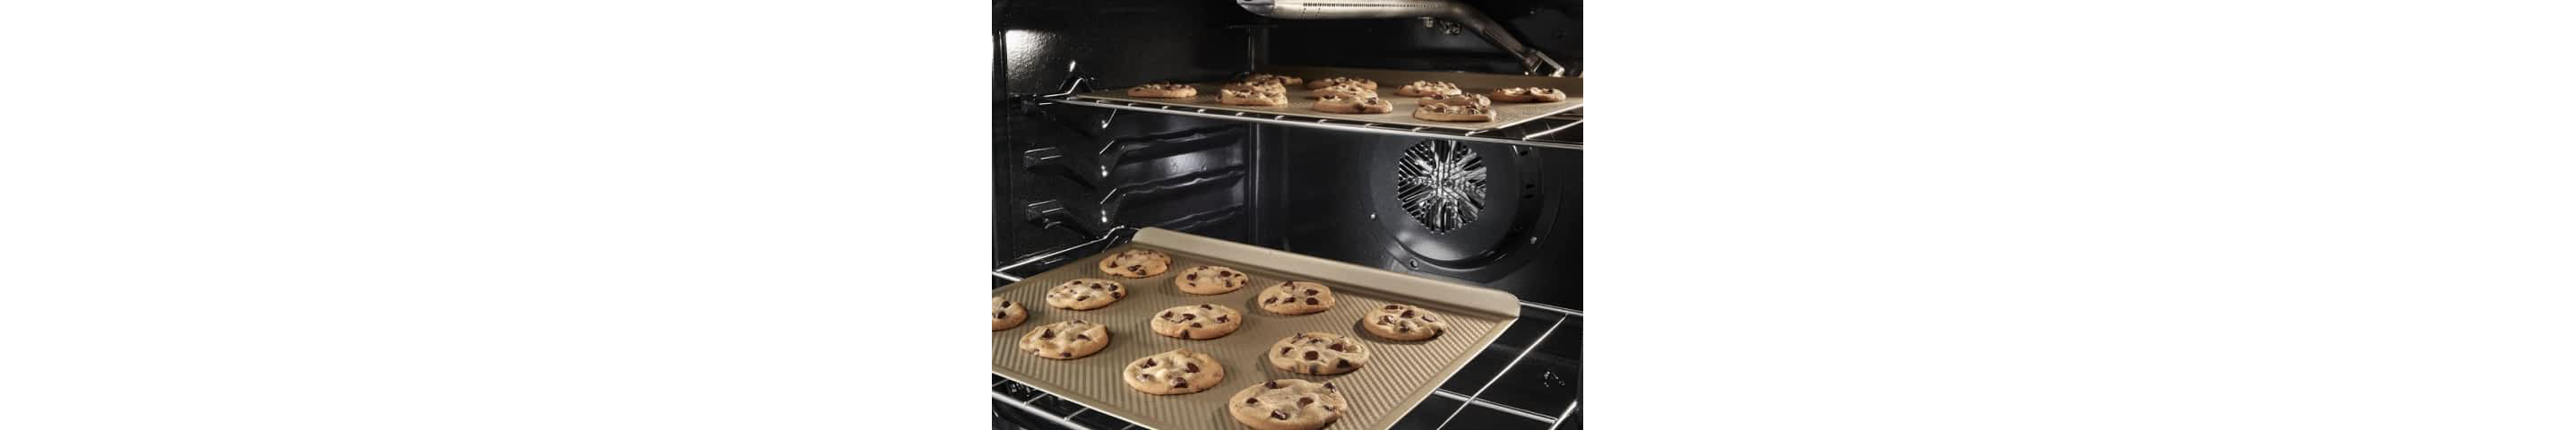 巧克力饼干烘焙在惠而浦®烤箱